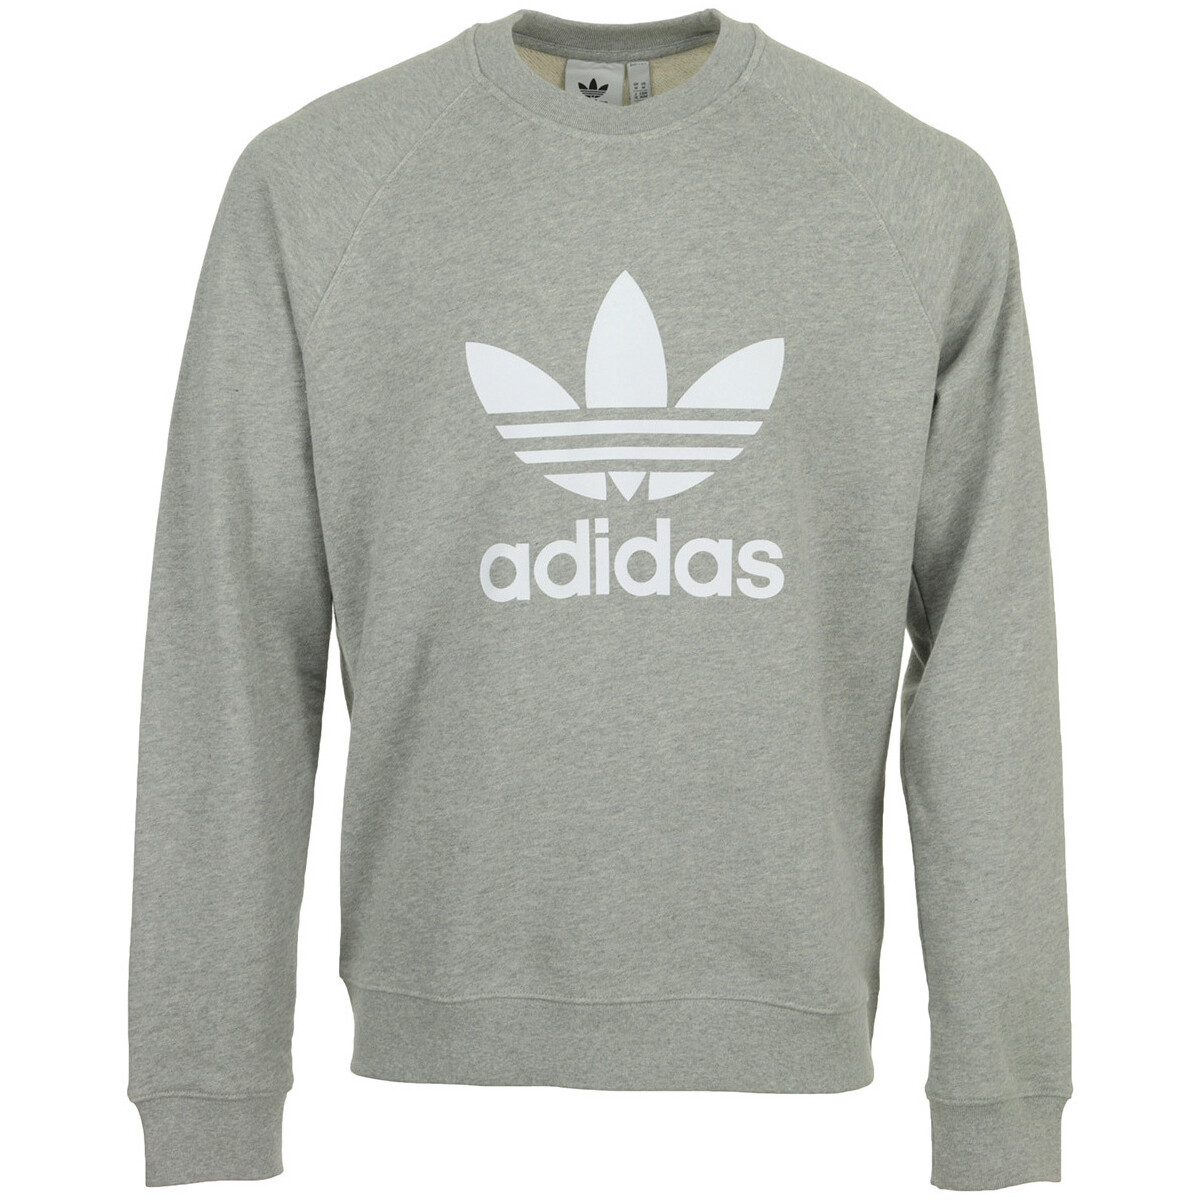 Textiel Heren Sweaters / Sweatshirts adidas Originals Trefoil Crew Grijs